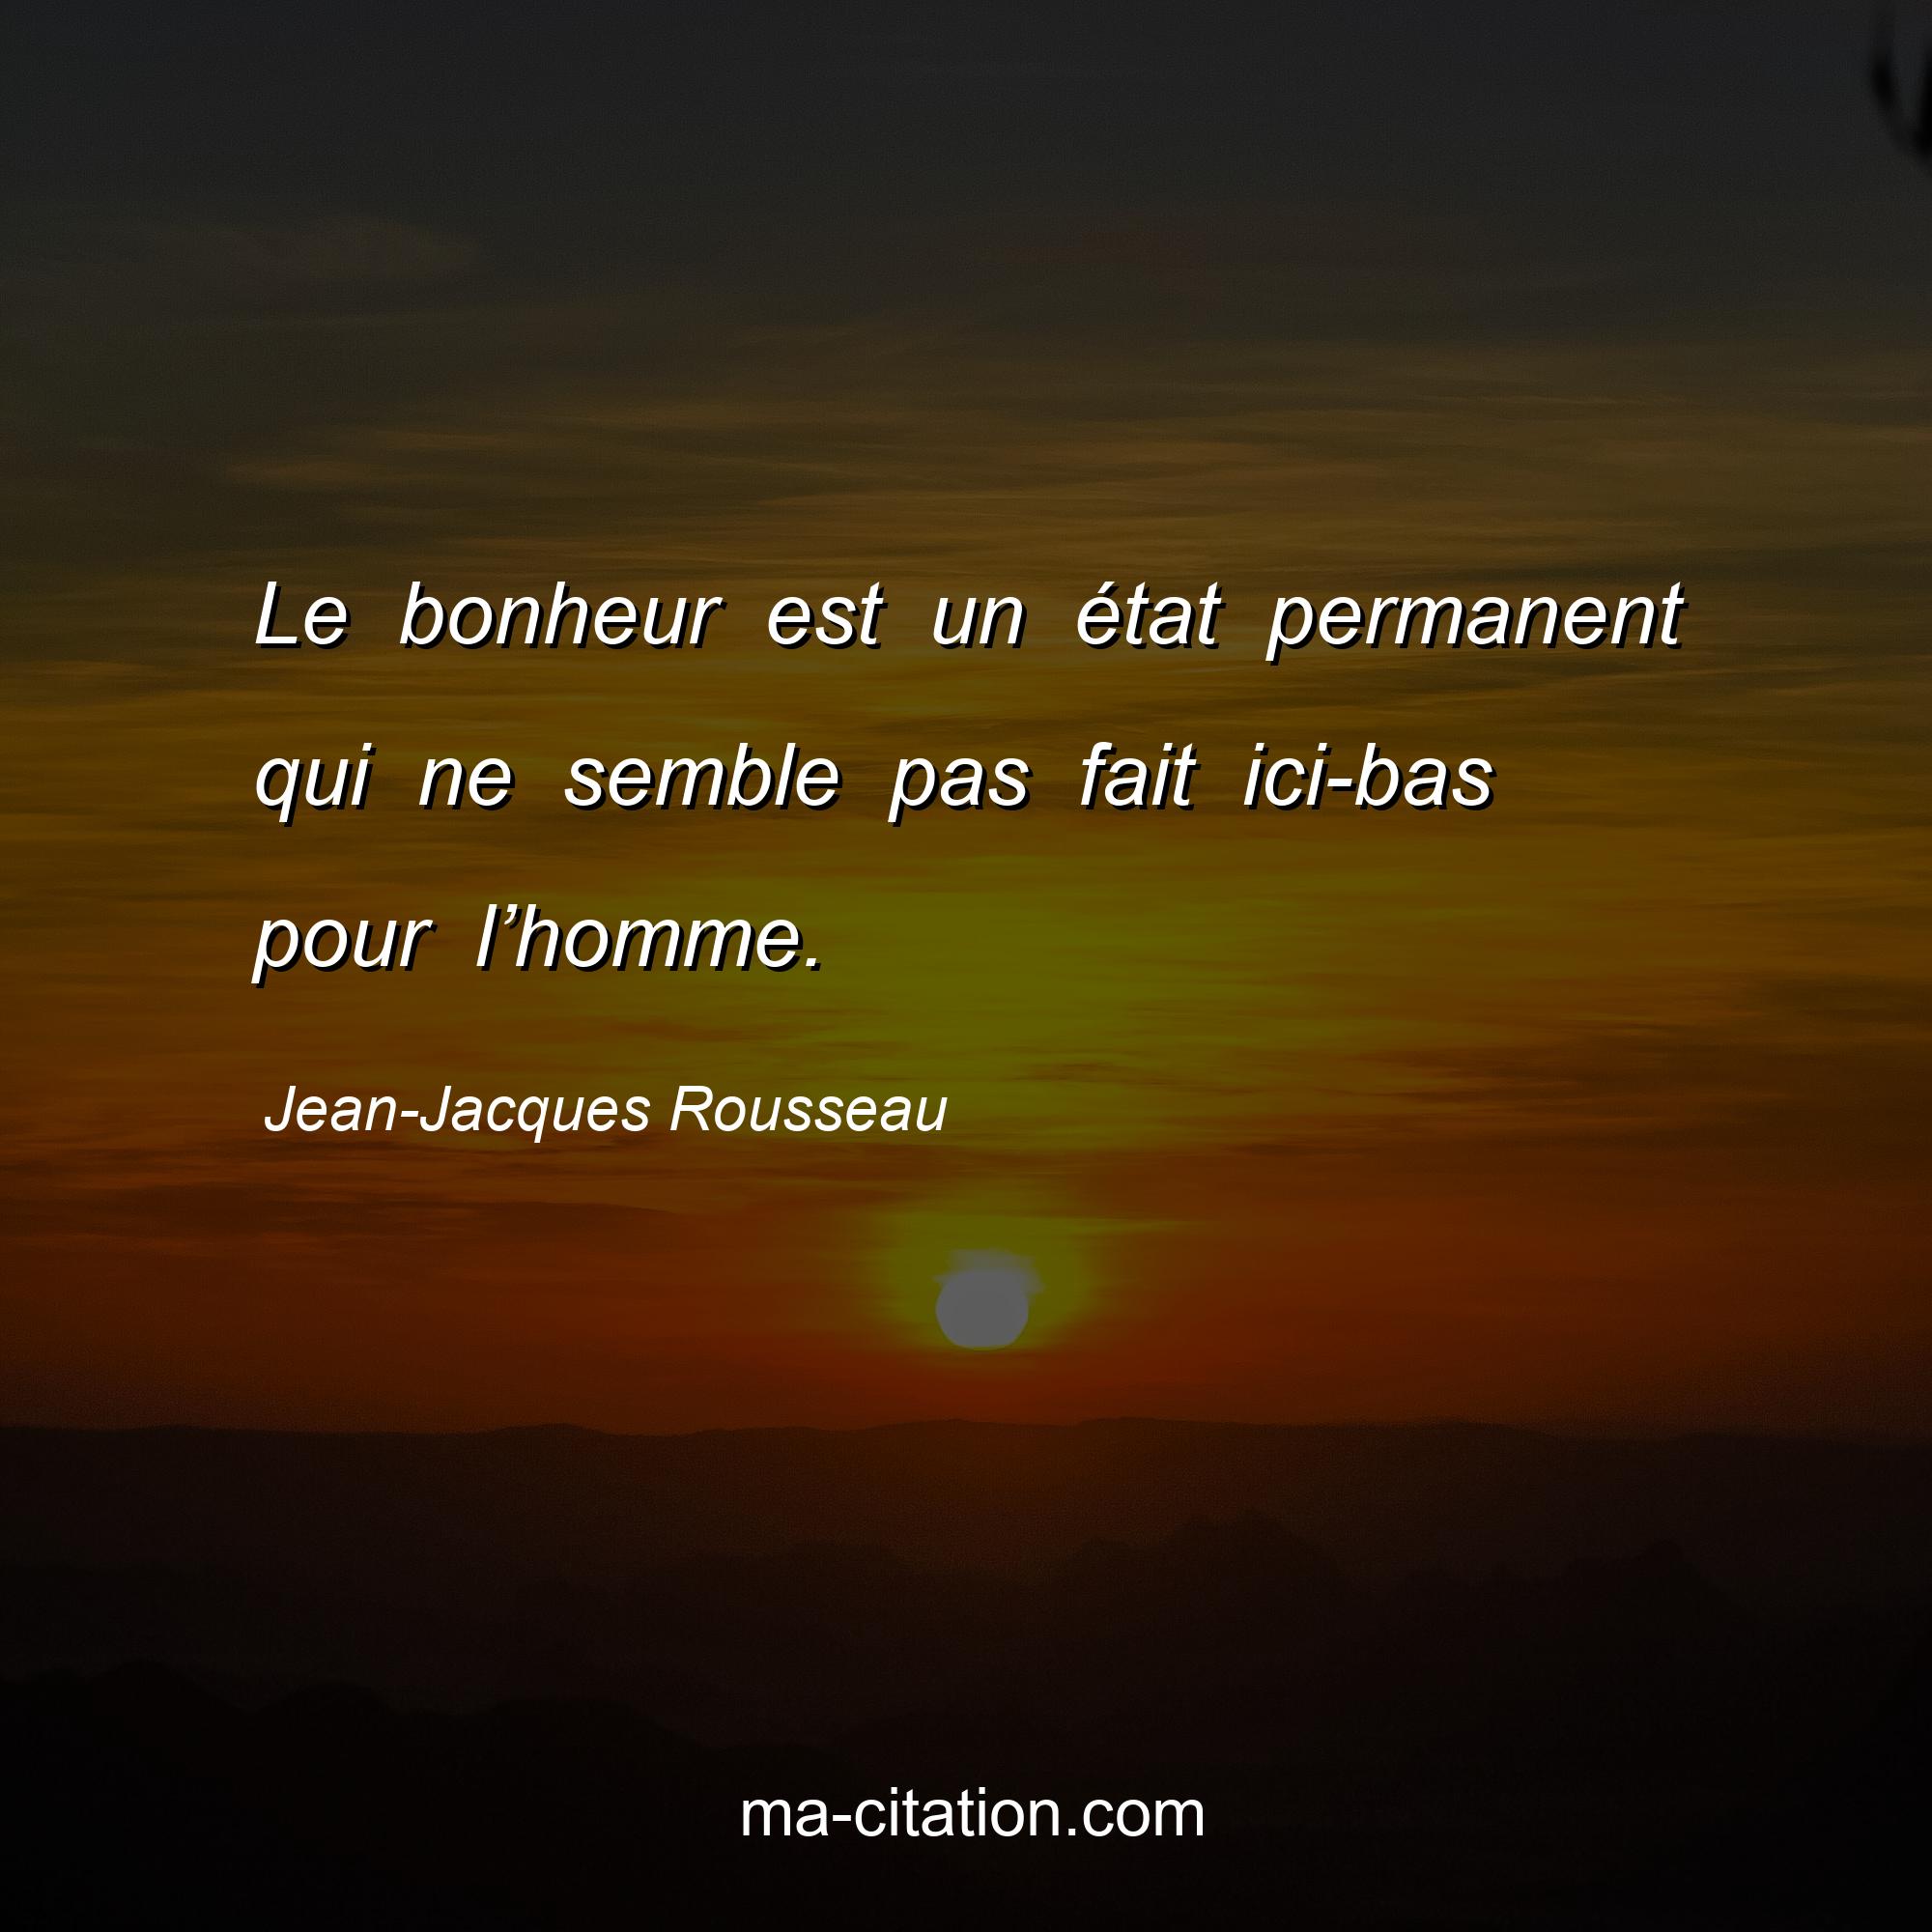 Jean-Jacques Rousseau : Le bonheur est un état permanent qui ne semble pas fait ici-bas pour l’homme.